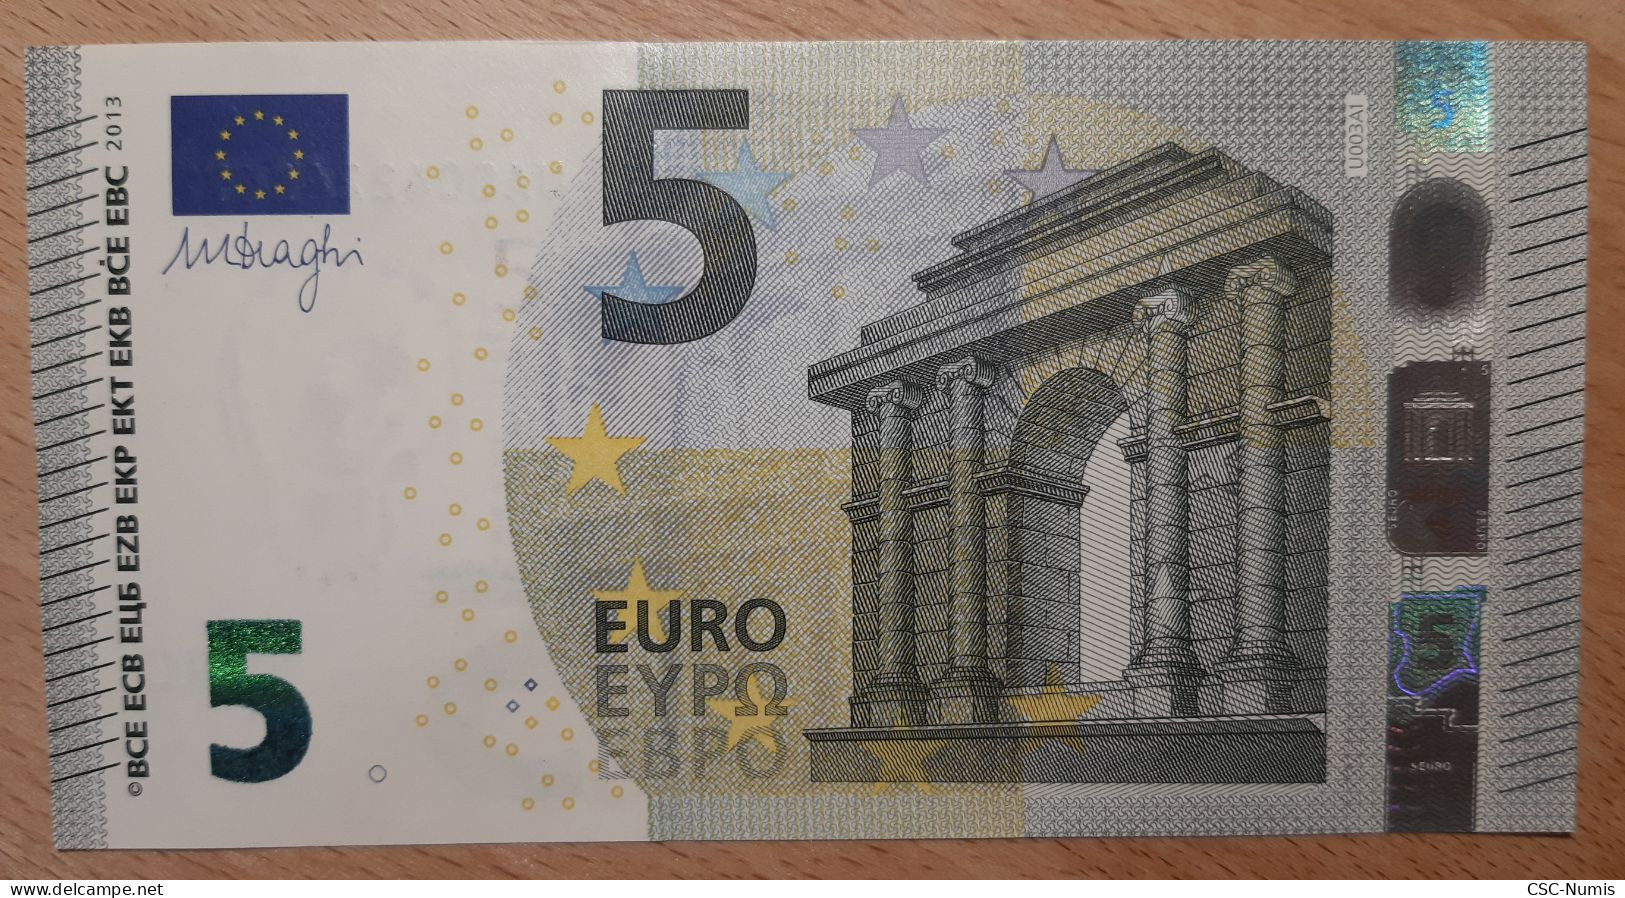 (B04) - France - 5 Euros 2013 - U003A1 - 5 Euro